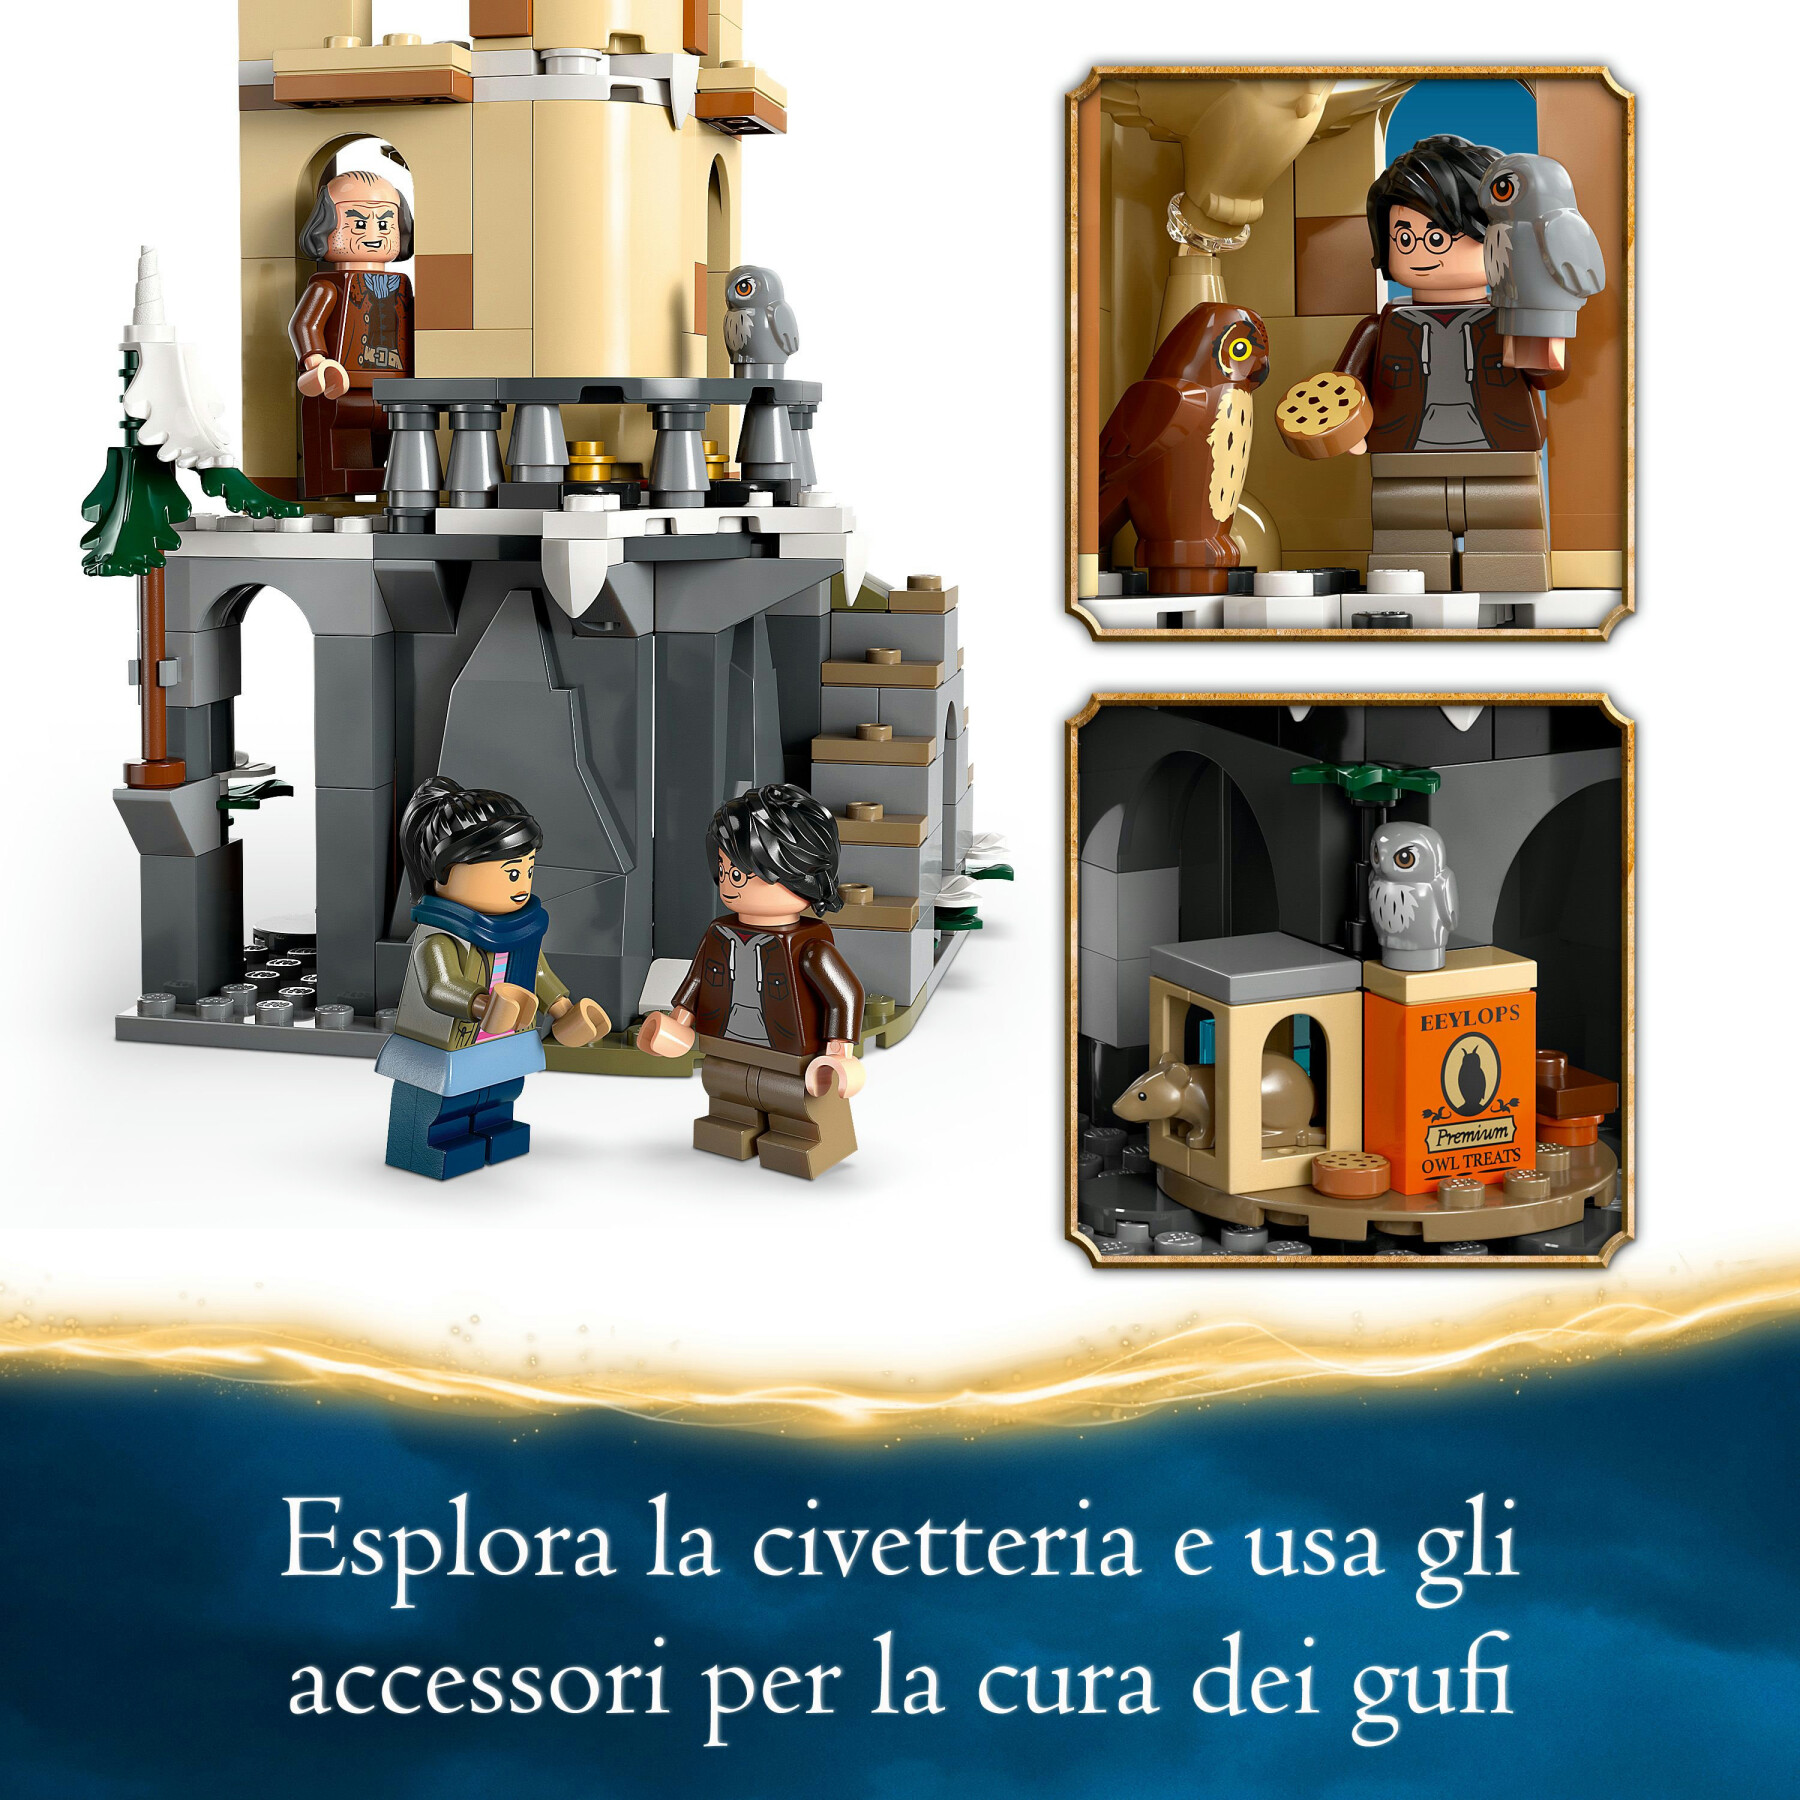 Lego harry potter 76430 guferia del castello di hogwarts, gioco per bambini di 8+ anni con 3 minifigure e 5 gufi giocattolo - Harry Potter, LEGO® Harry Potter™